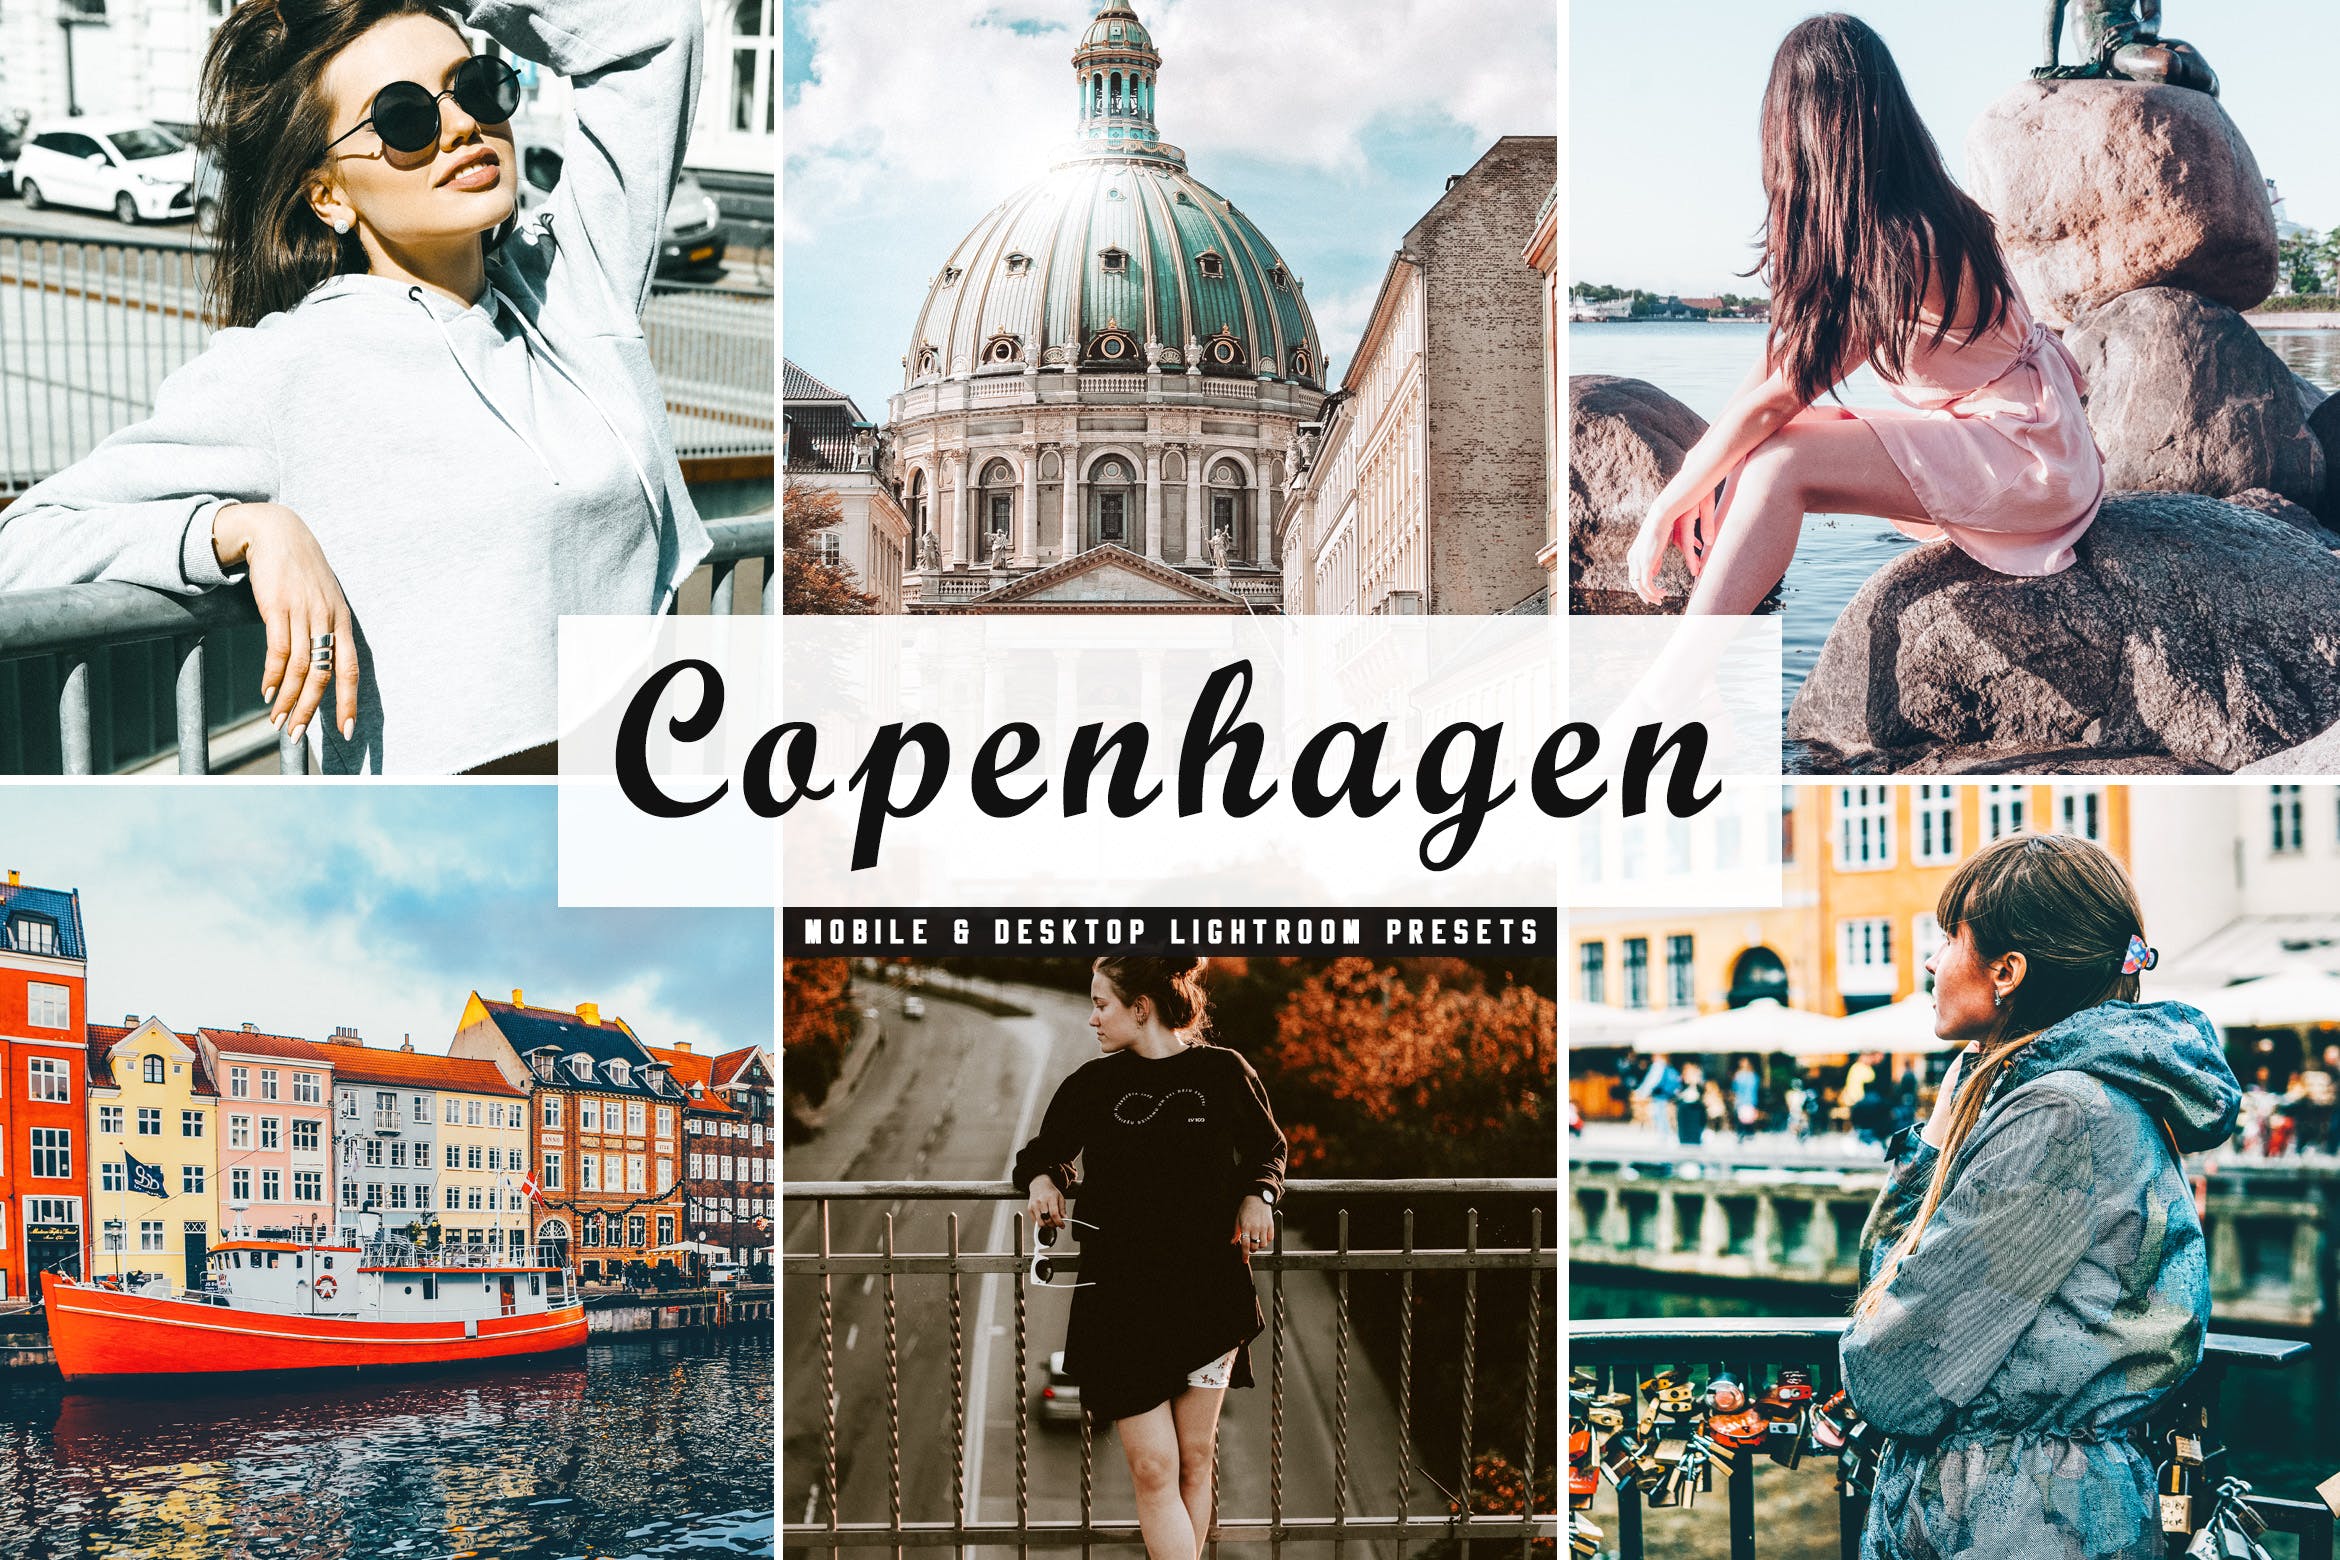 人物风景摄影亮色暖色调处理16素材精选LR预设下载 Copenhagen Mobile & Desktop Lightroom Presets插图